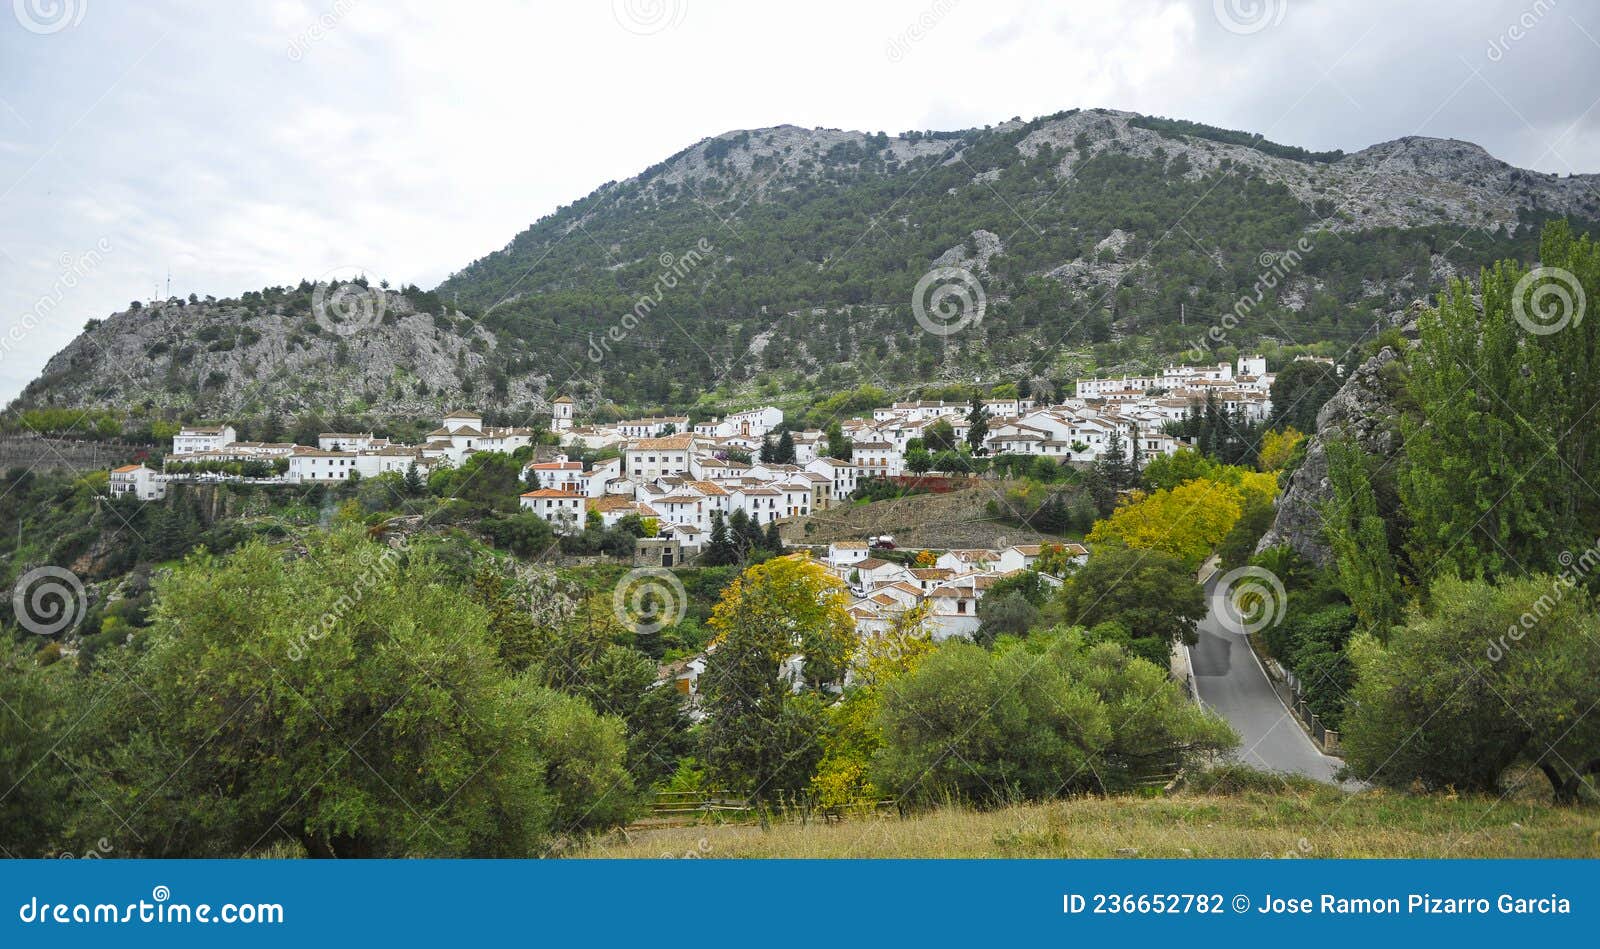 grazalema pueblo blanco de la sierra de cadiz entre montaÃÂ±as. andalucÃÂ­a espaÃÂ±a